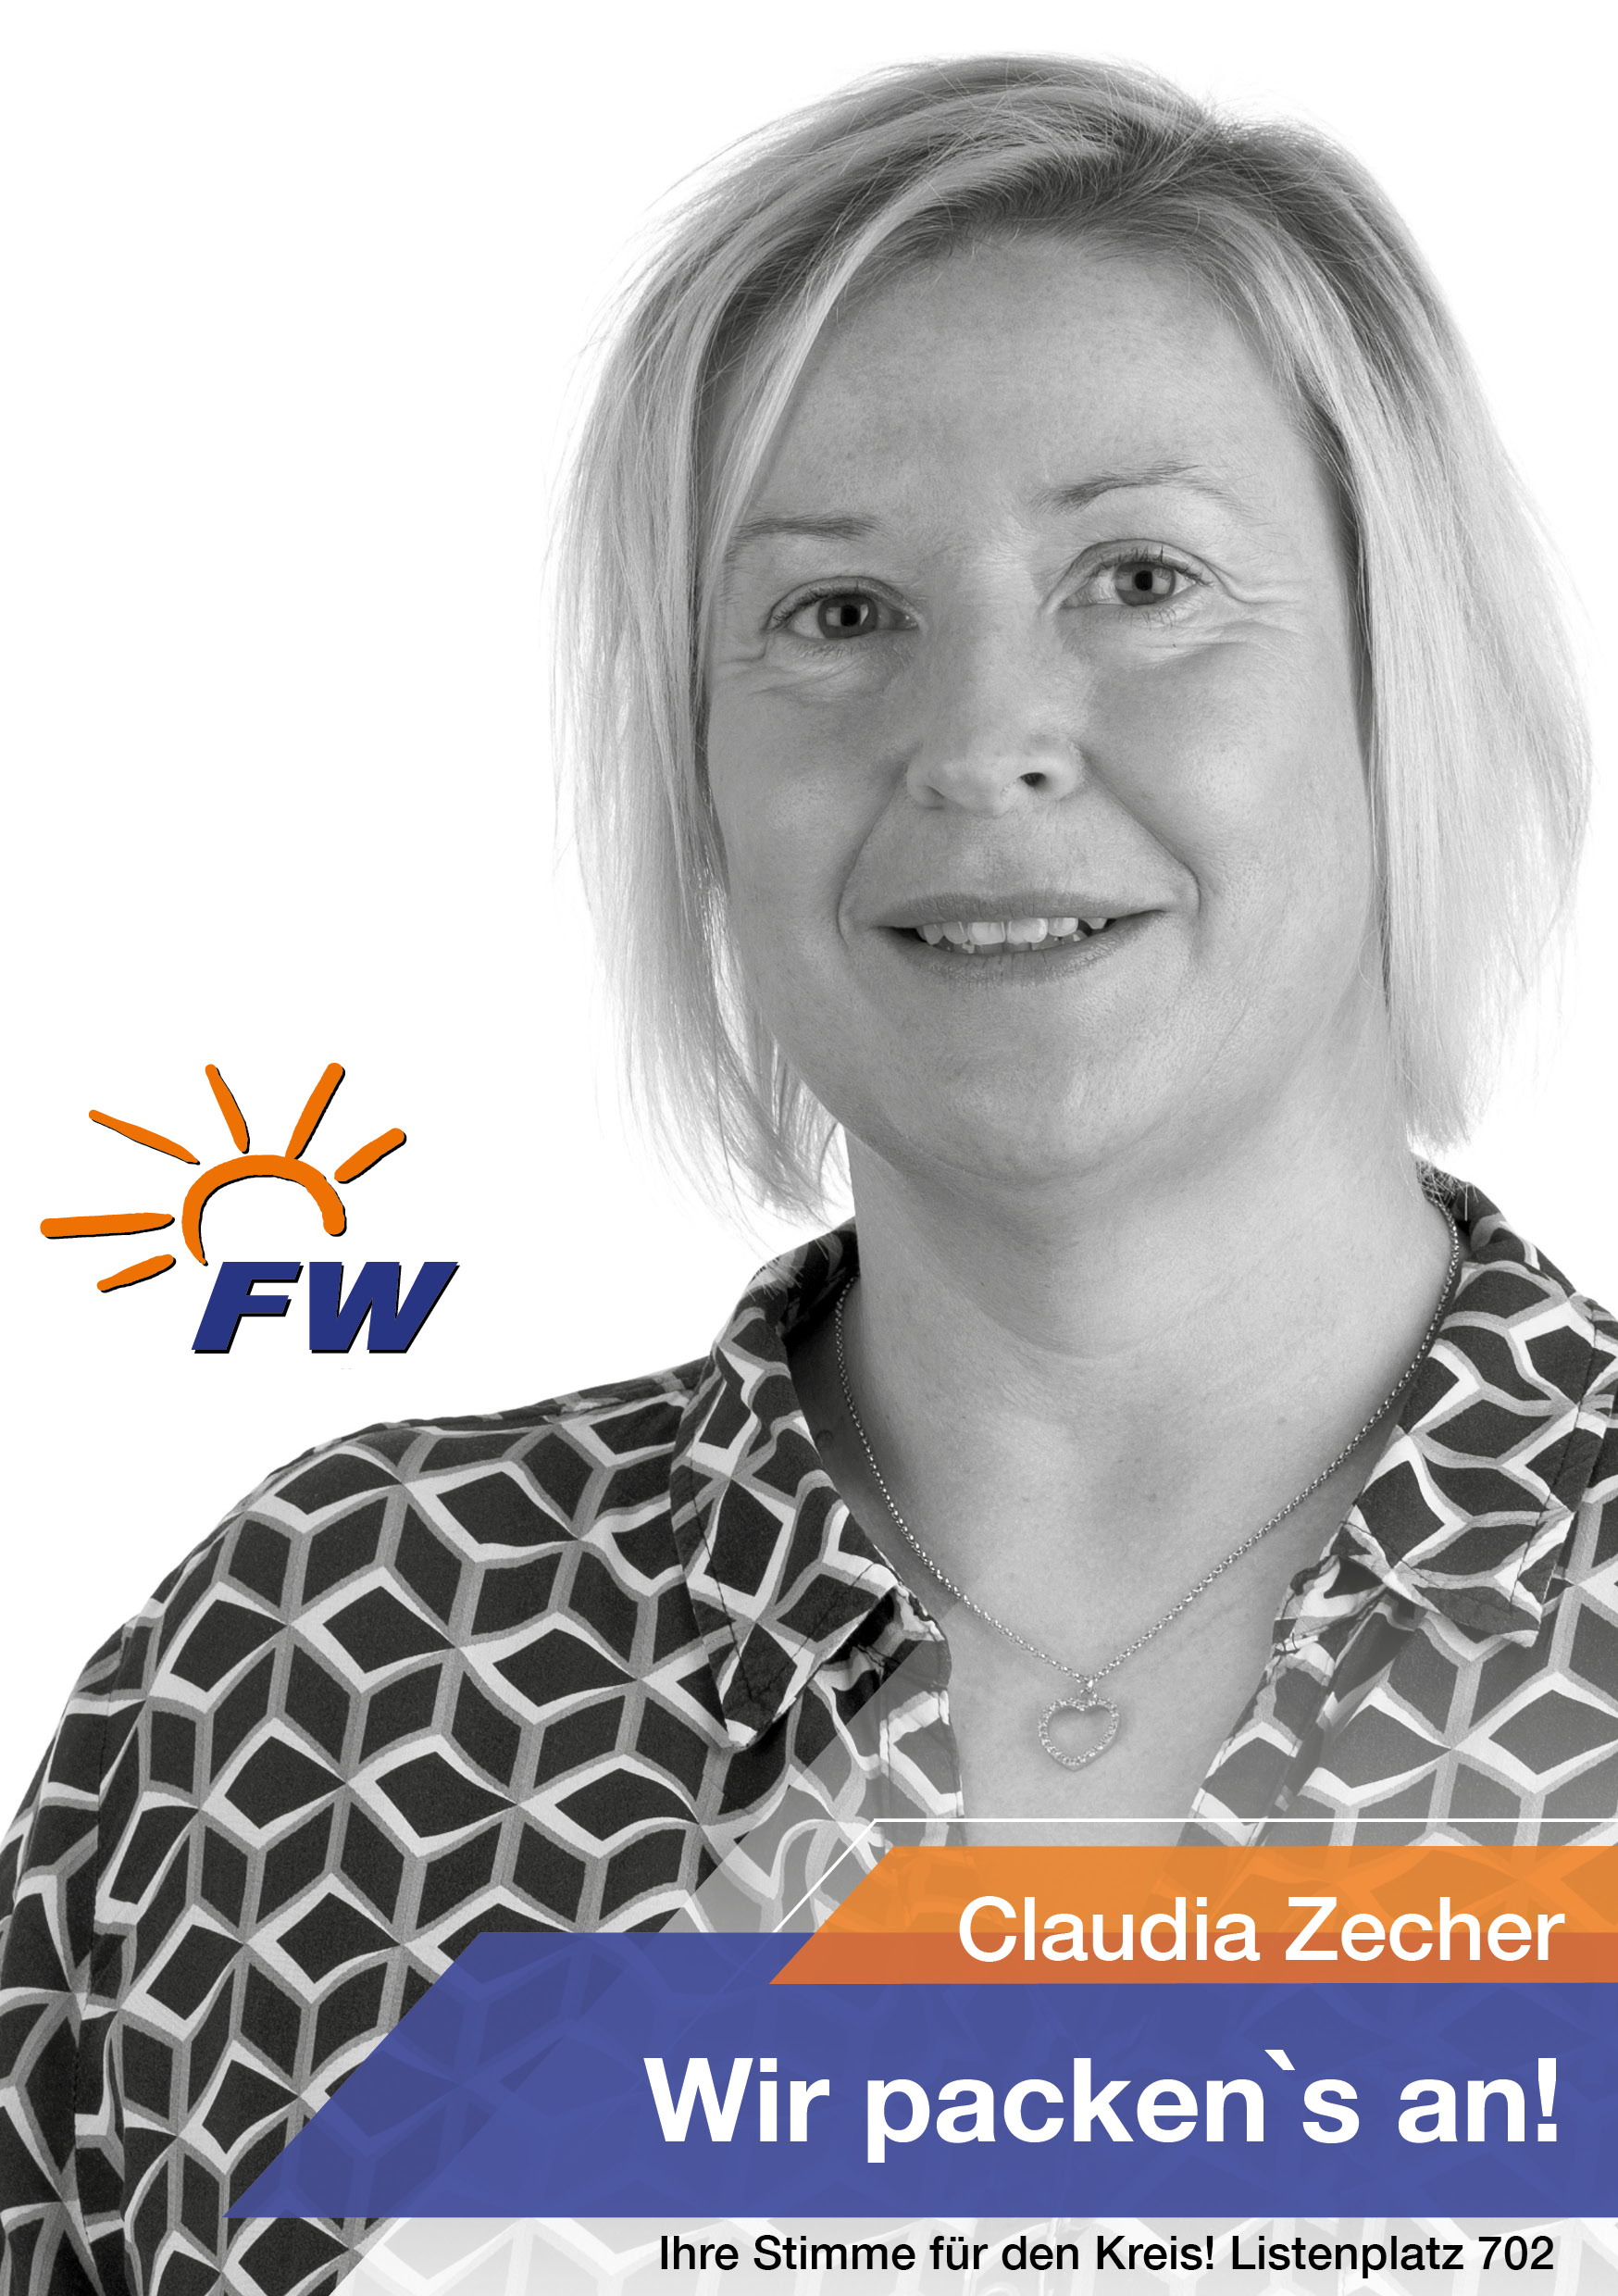 Claudia Zecher